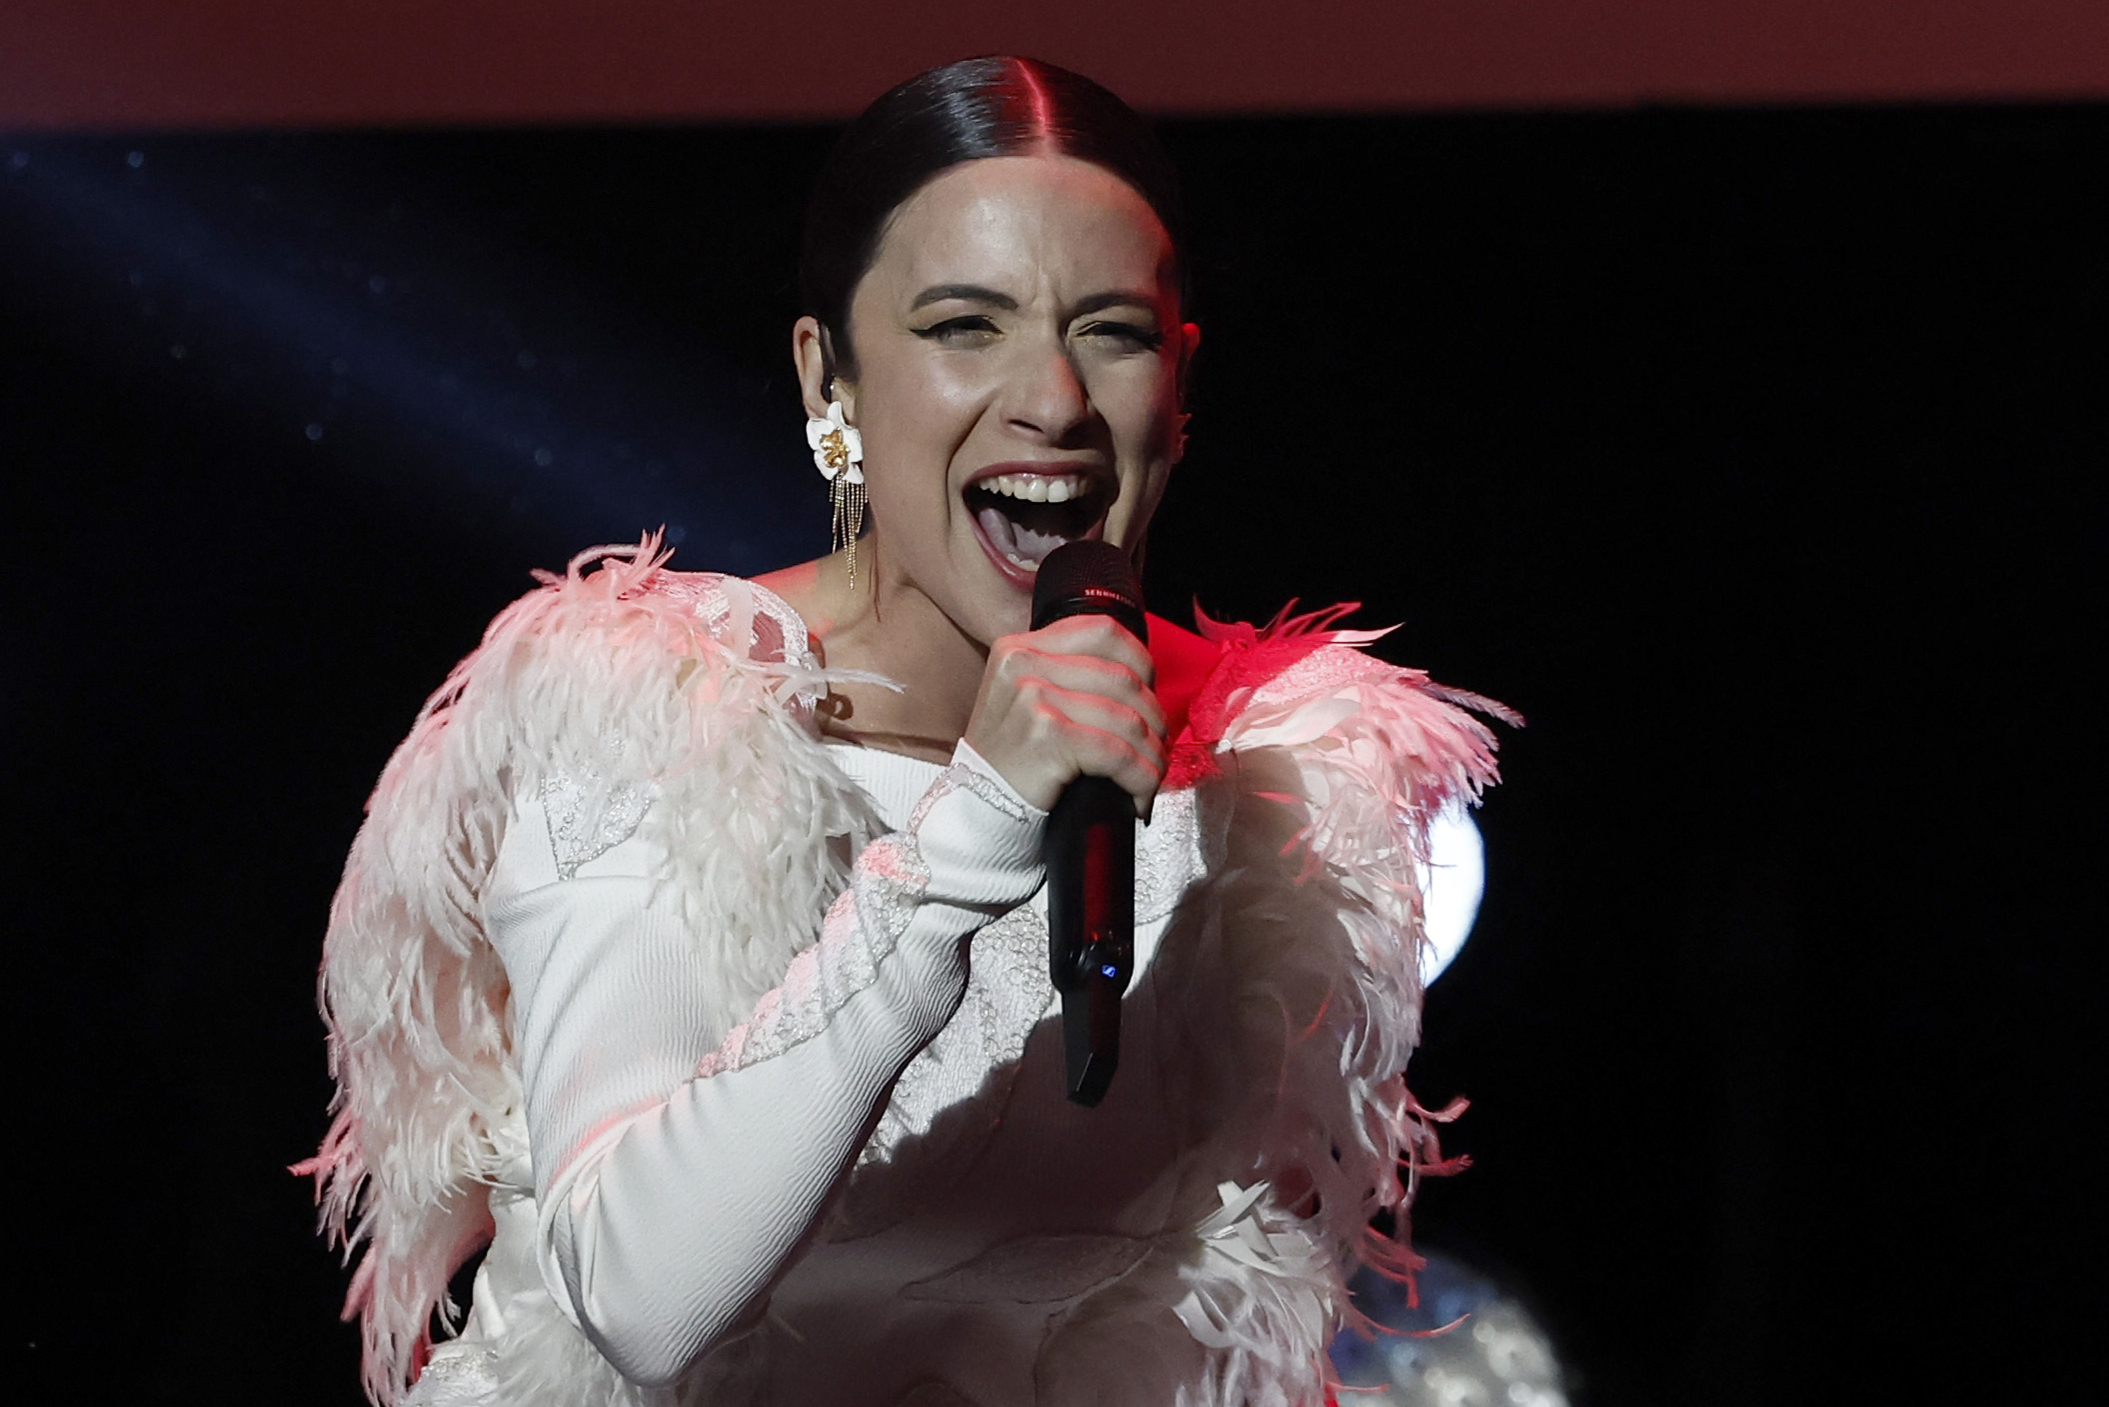 La representante espaola en Eurovisin, Blanca Paloma, acta en un concierto antes de su participacin en el festival que se celebra en el Reino Unido el fin de semana del 13 y 14 de mayo.